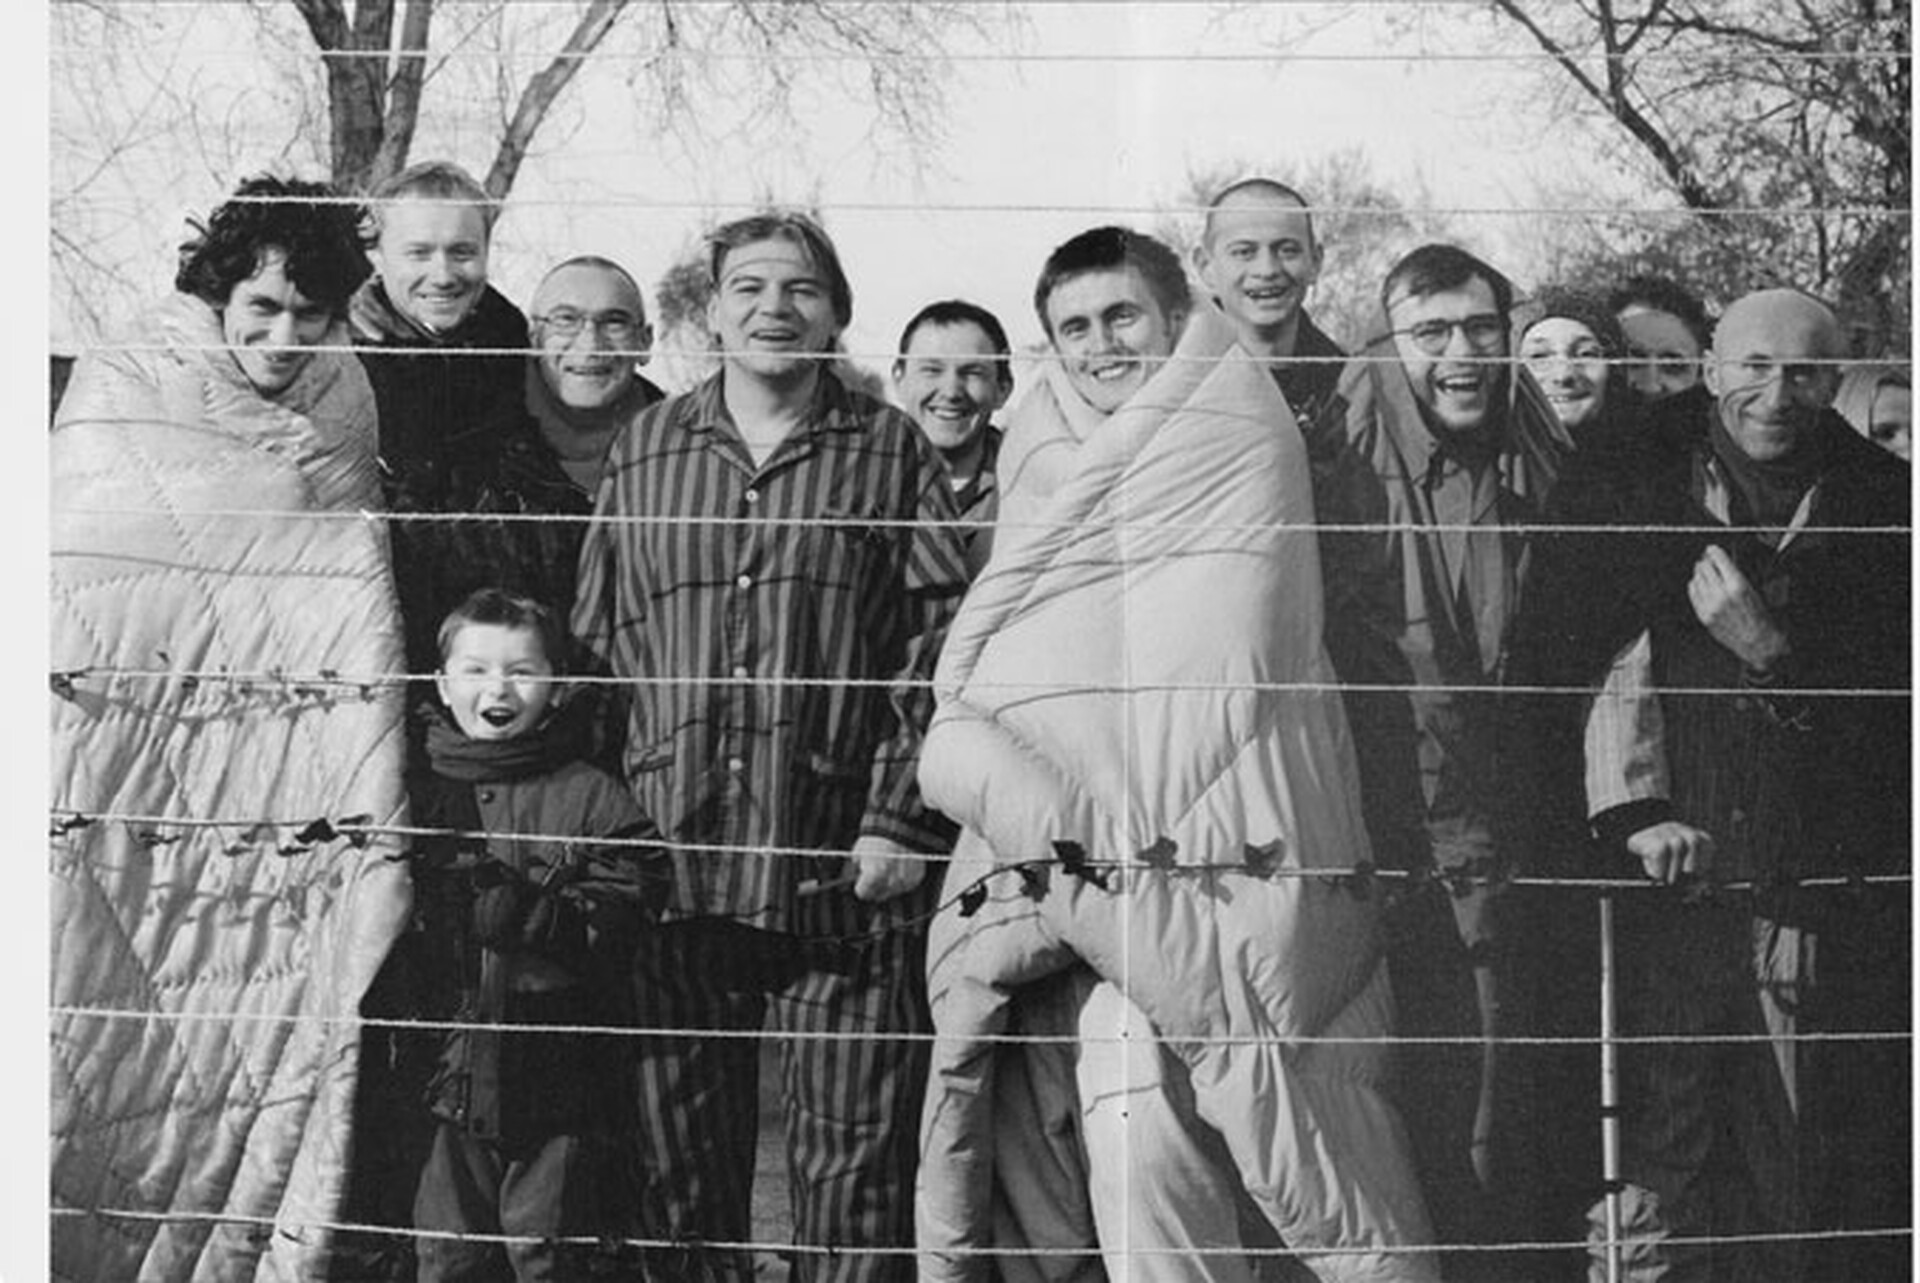  Czarno-białe zdjęcie Zbigniewa Libery Mieszkańcy z cyklu Pozytywy. Jest to zainscenizowana fotografia przedstawiająca kilkanaście uśmiechniętych osób pozujących z rozpiętymi sznurkami do wieszania prania. 